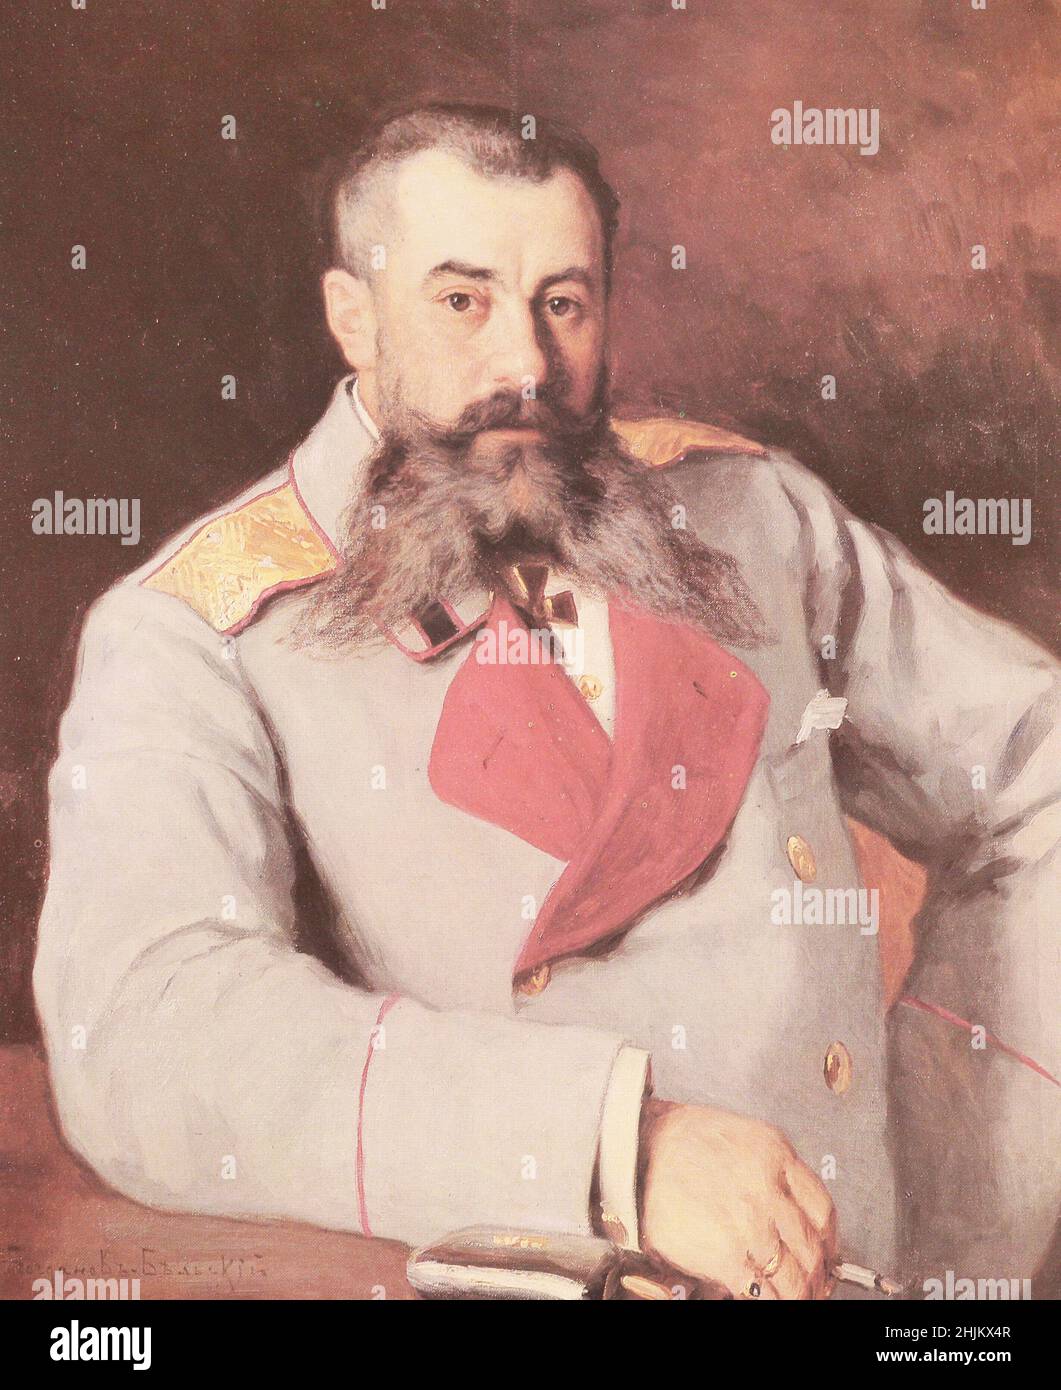 Ritratto di una fanteria Generale dell'Impero Russo. Pittura del 1910. Foto Stock